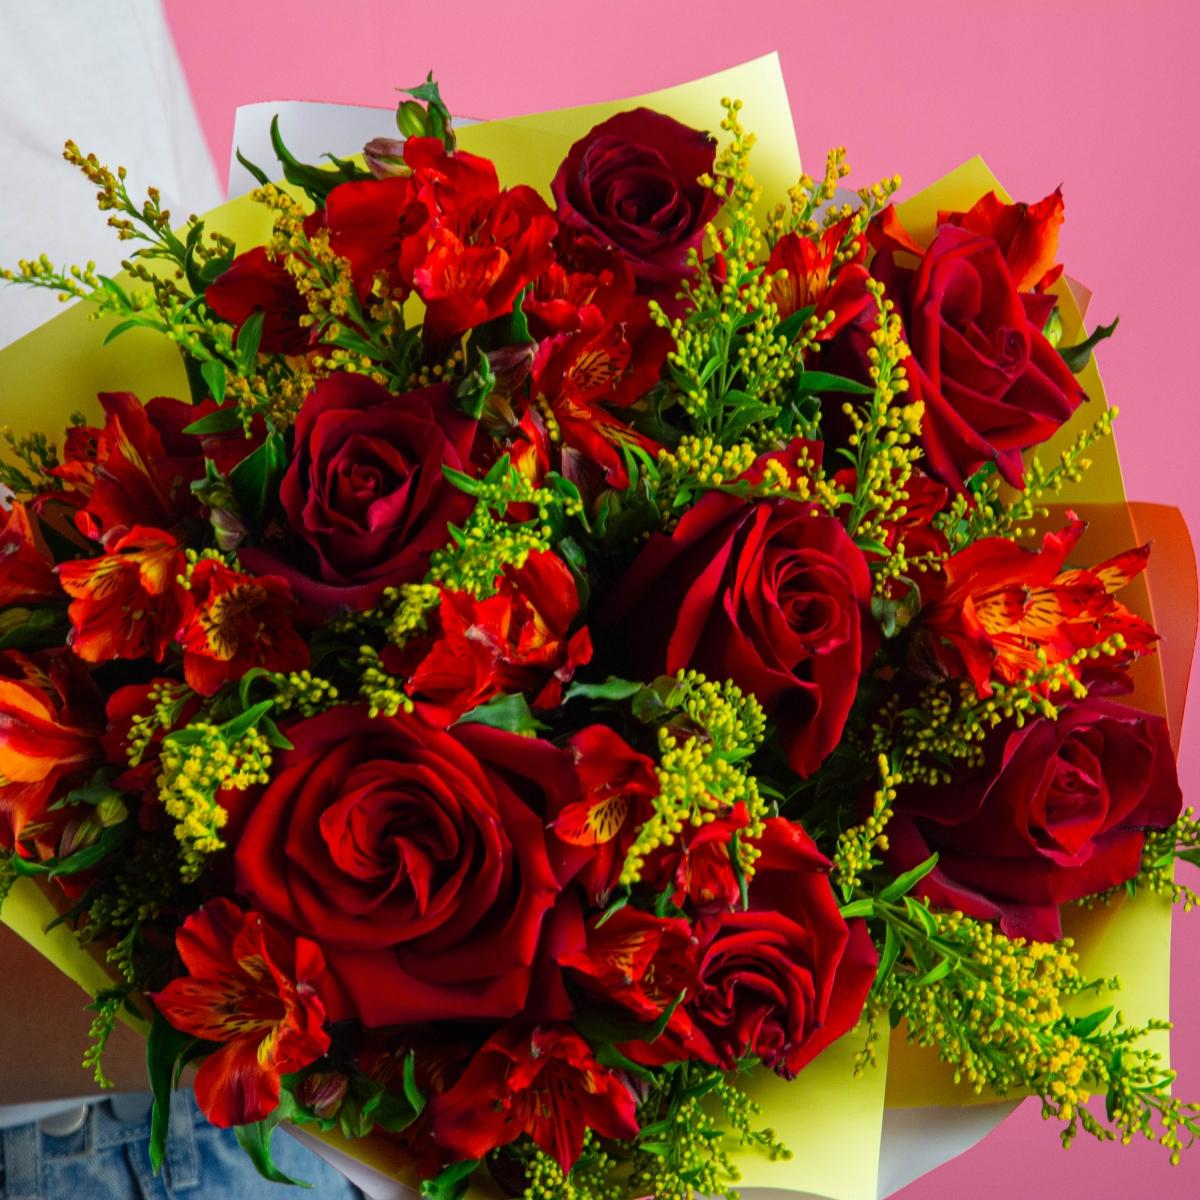 7 красных роз с альстромериями